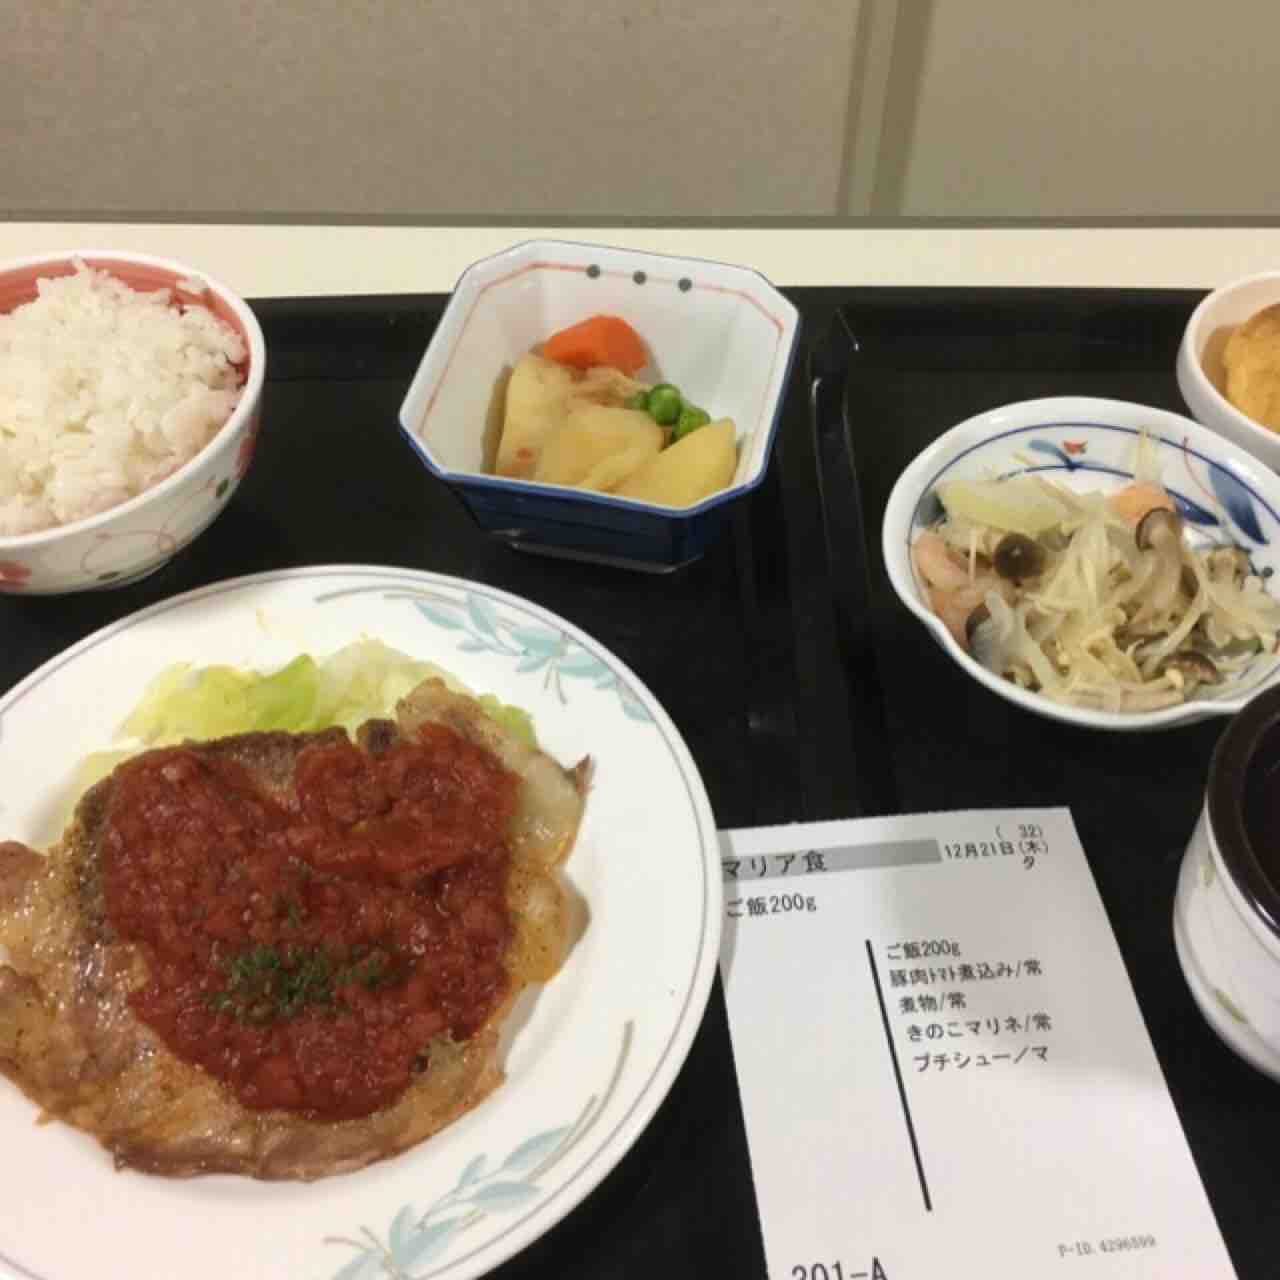 聖母病院での出産 食事編 Sayamiyaのblog